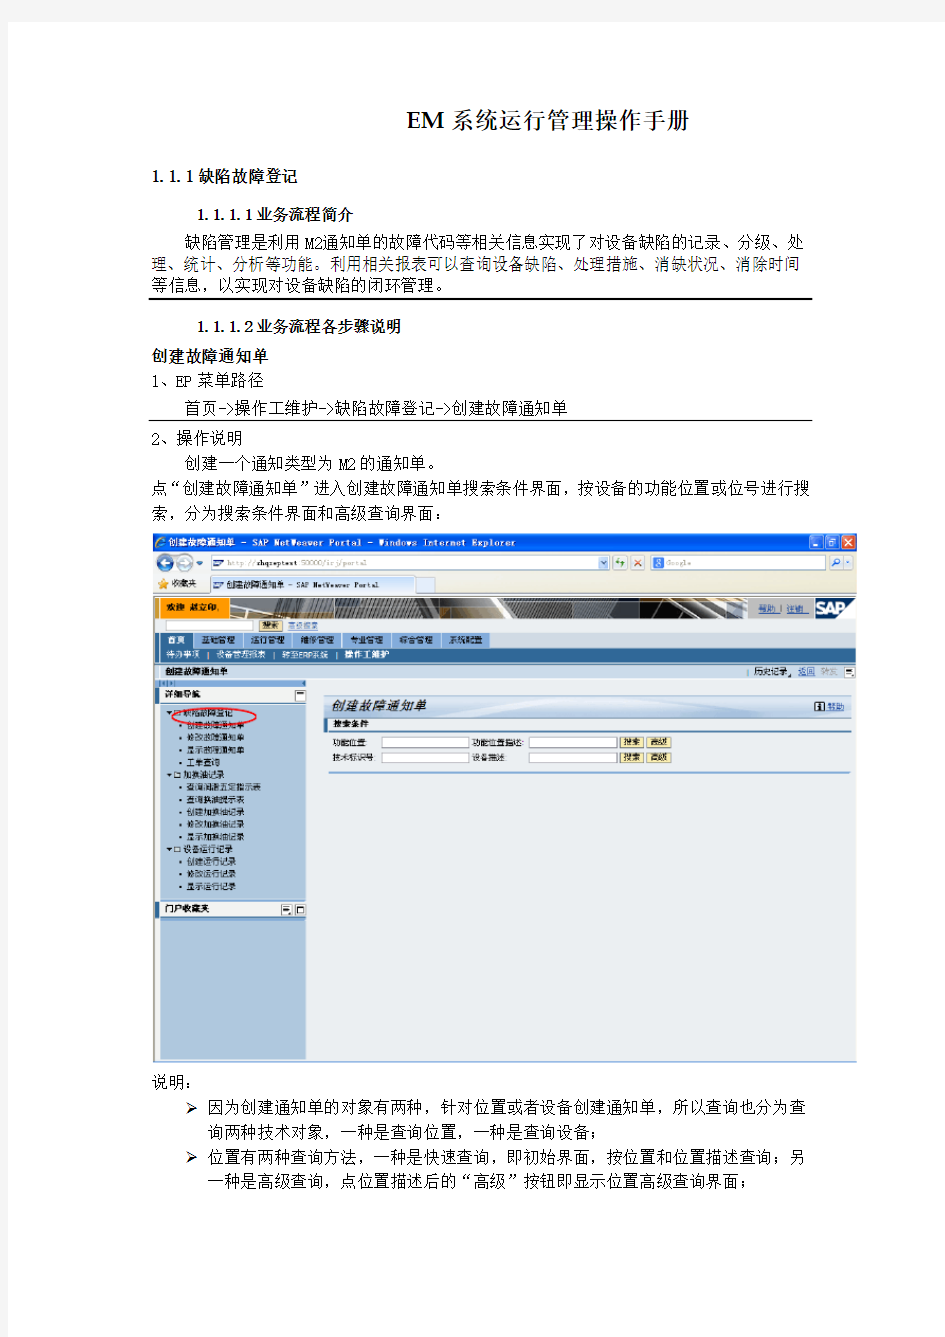 EM系统运行管理操作手册